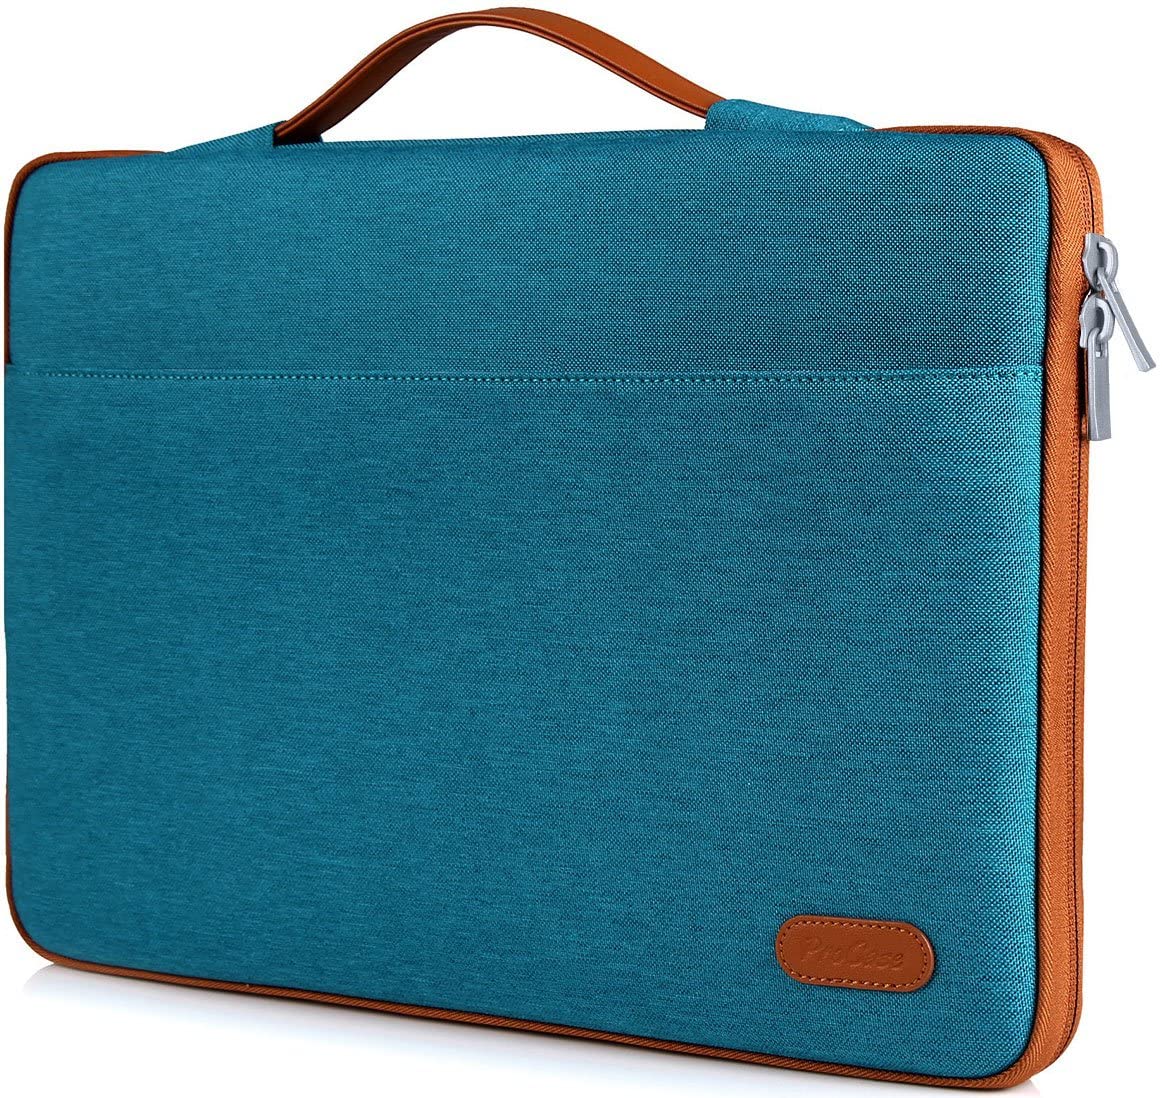 Best Laptop Bags | WaterField Designs